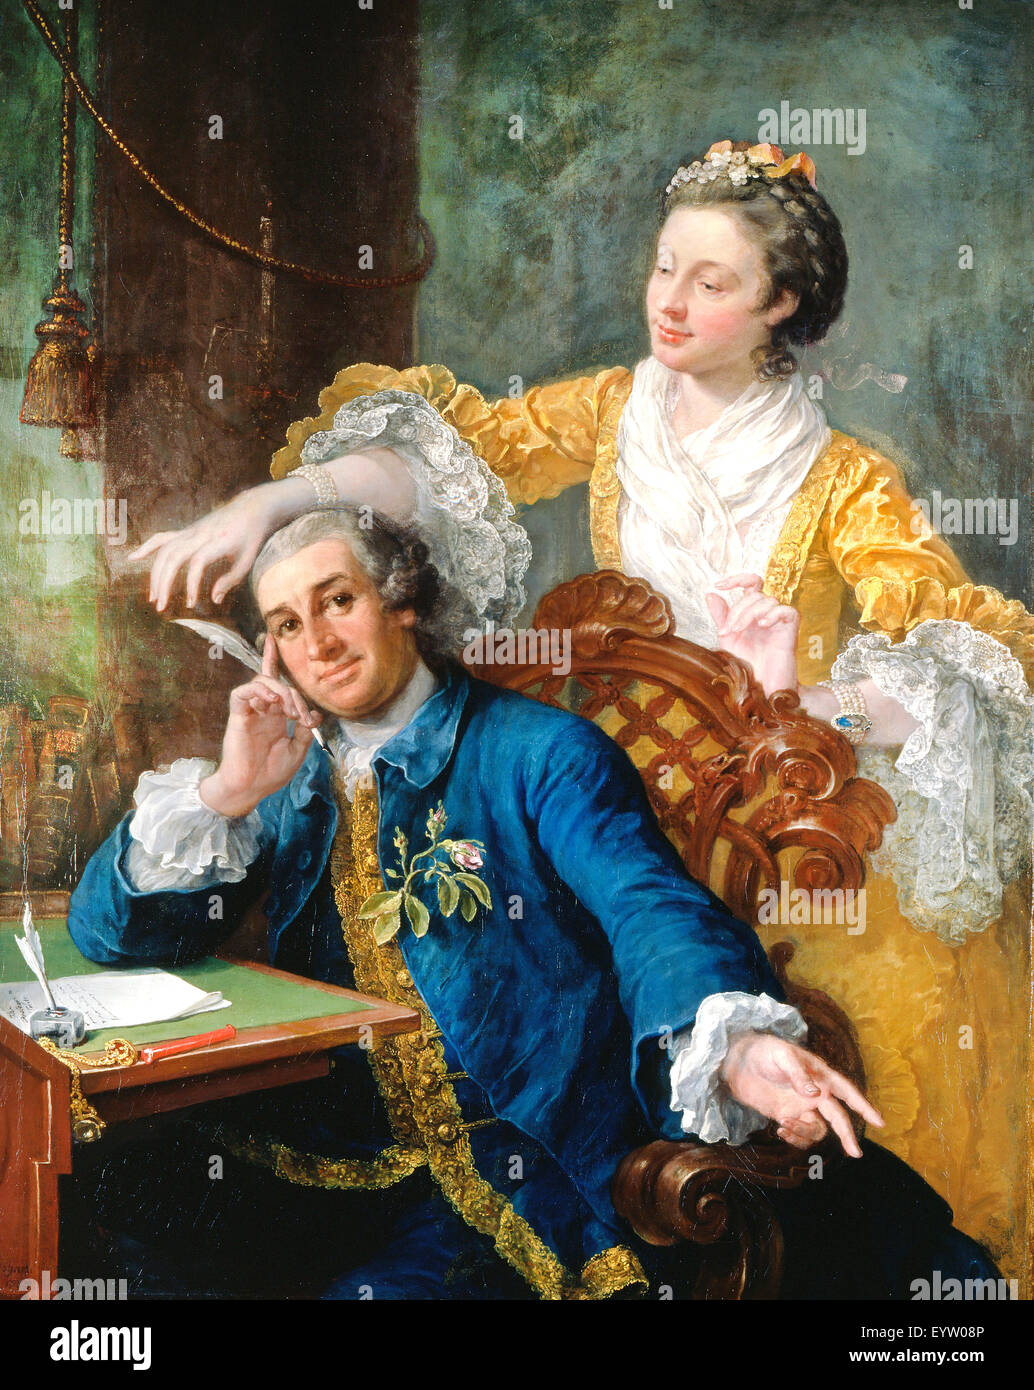 William Hogarth, David Garrick mit seiner Frau Eva-Maria Veigel, 'La Violette' oder "Violetti". 1757-1764 Öl auf Leinwand. Royal Colle Stockfoto